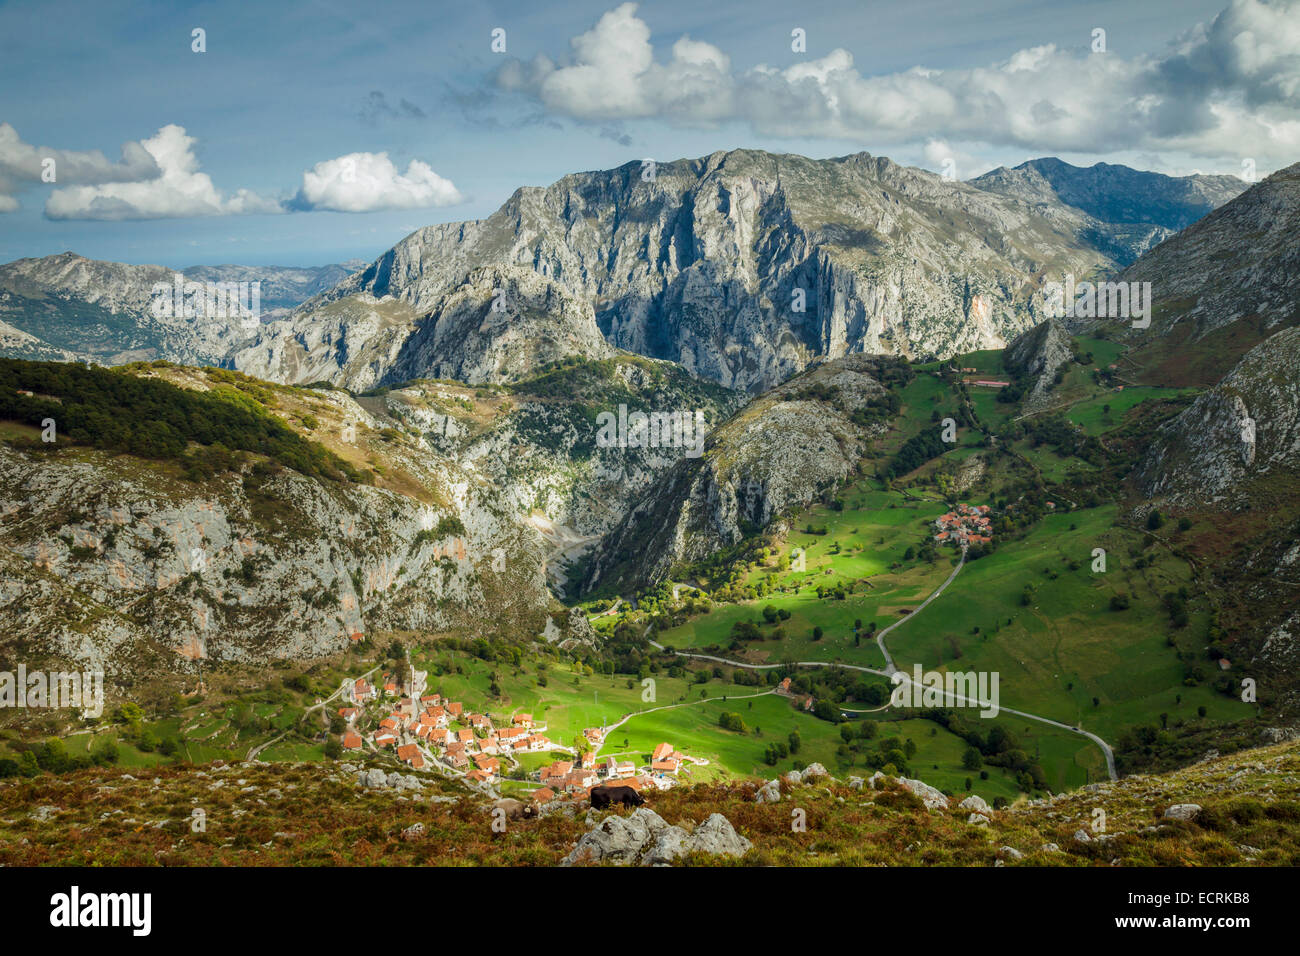 Parco Nazionale di Picos de Europa nei pressi del villaggio di Beges, Cantabria, Spagna. Ándara (massiccio orientale). Foto Stock